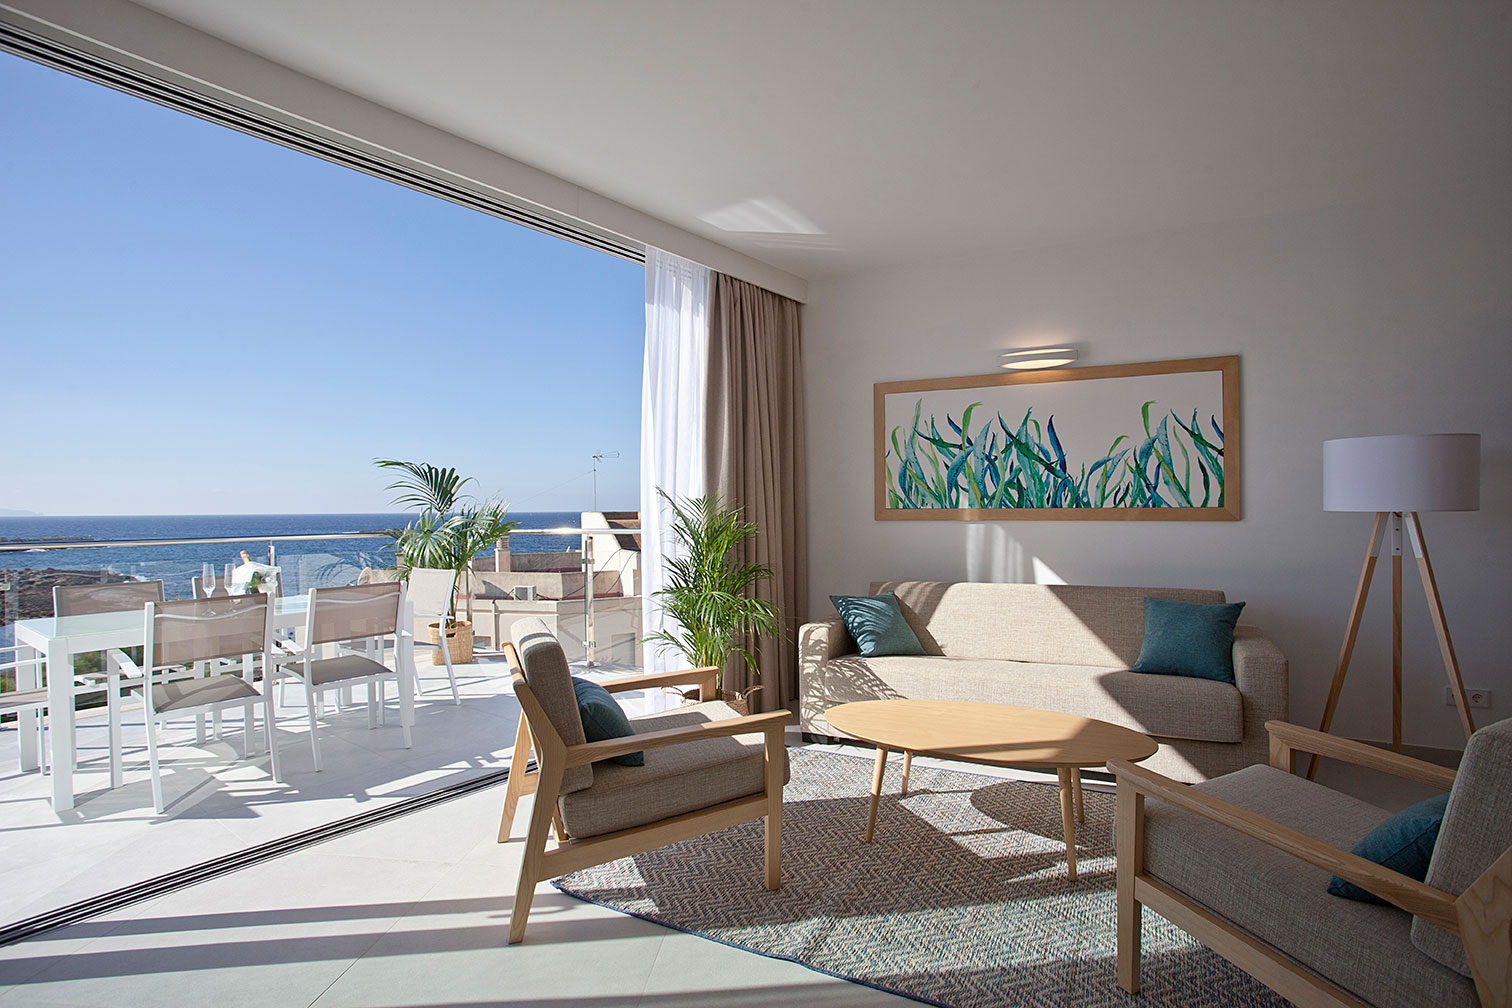 Salón de estar y terraza con vistas al mar